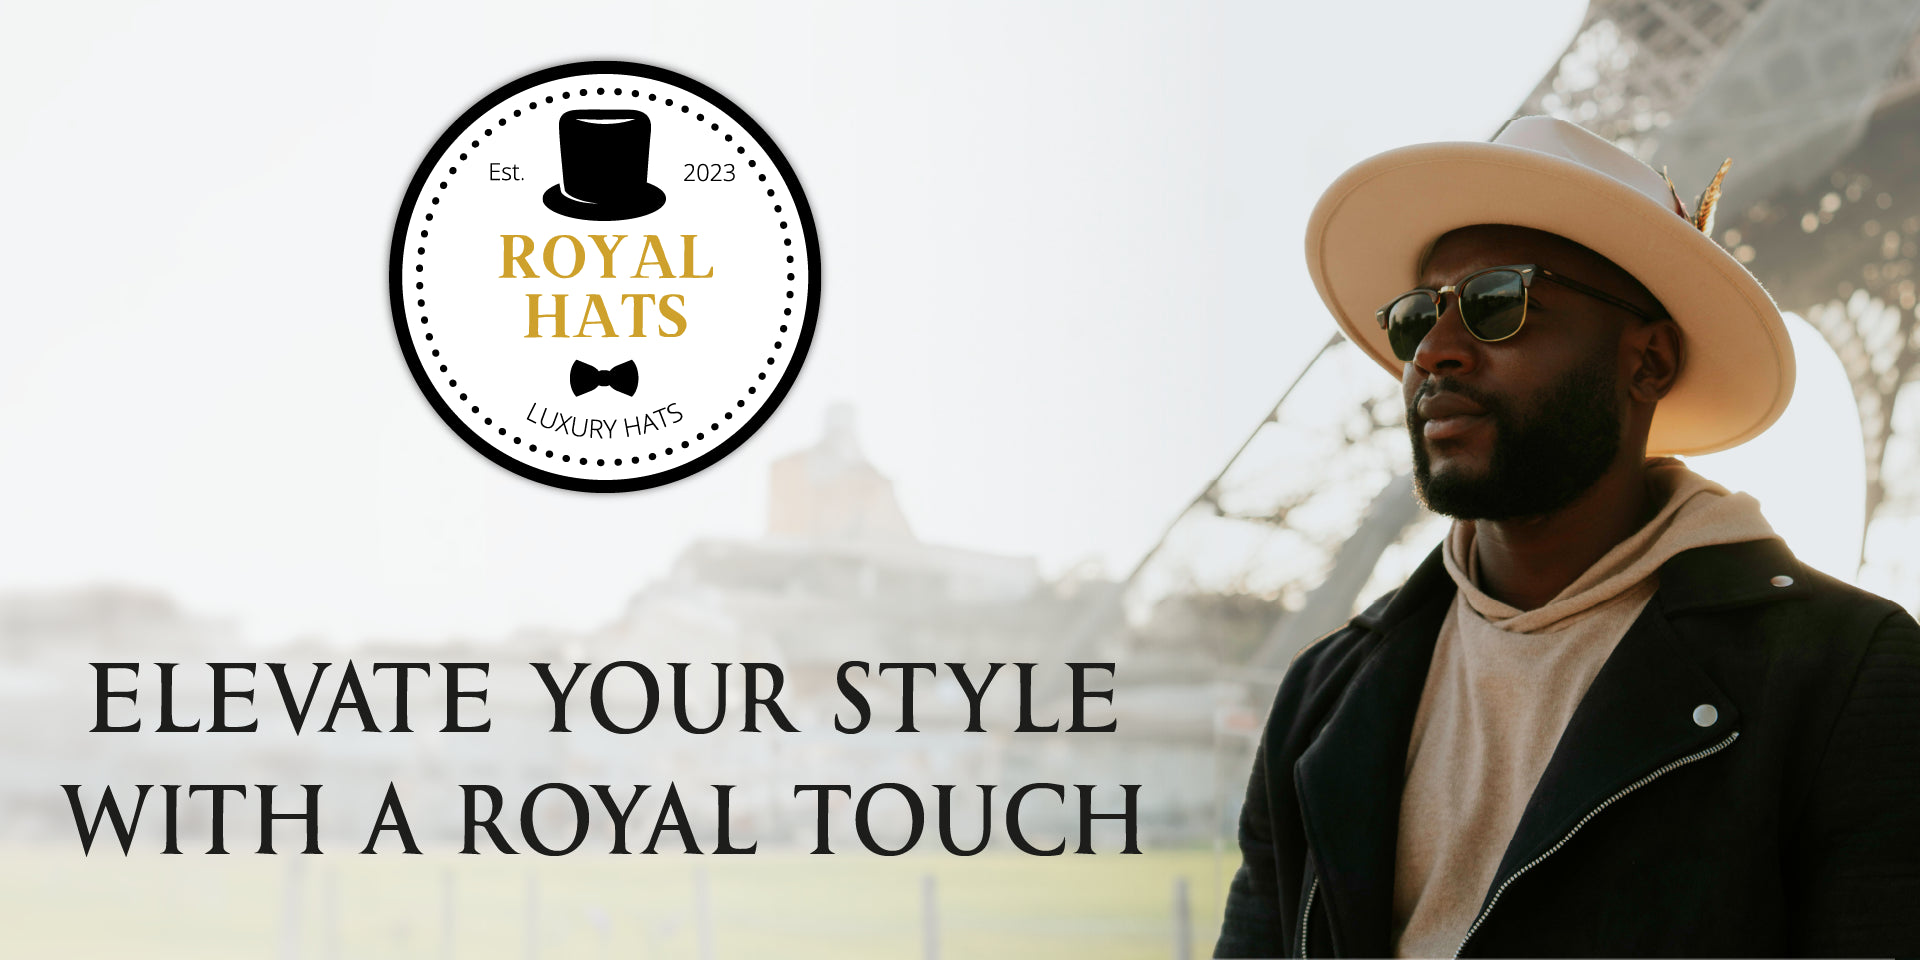 Visit Royal Hats